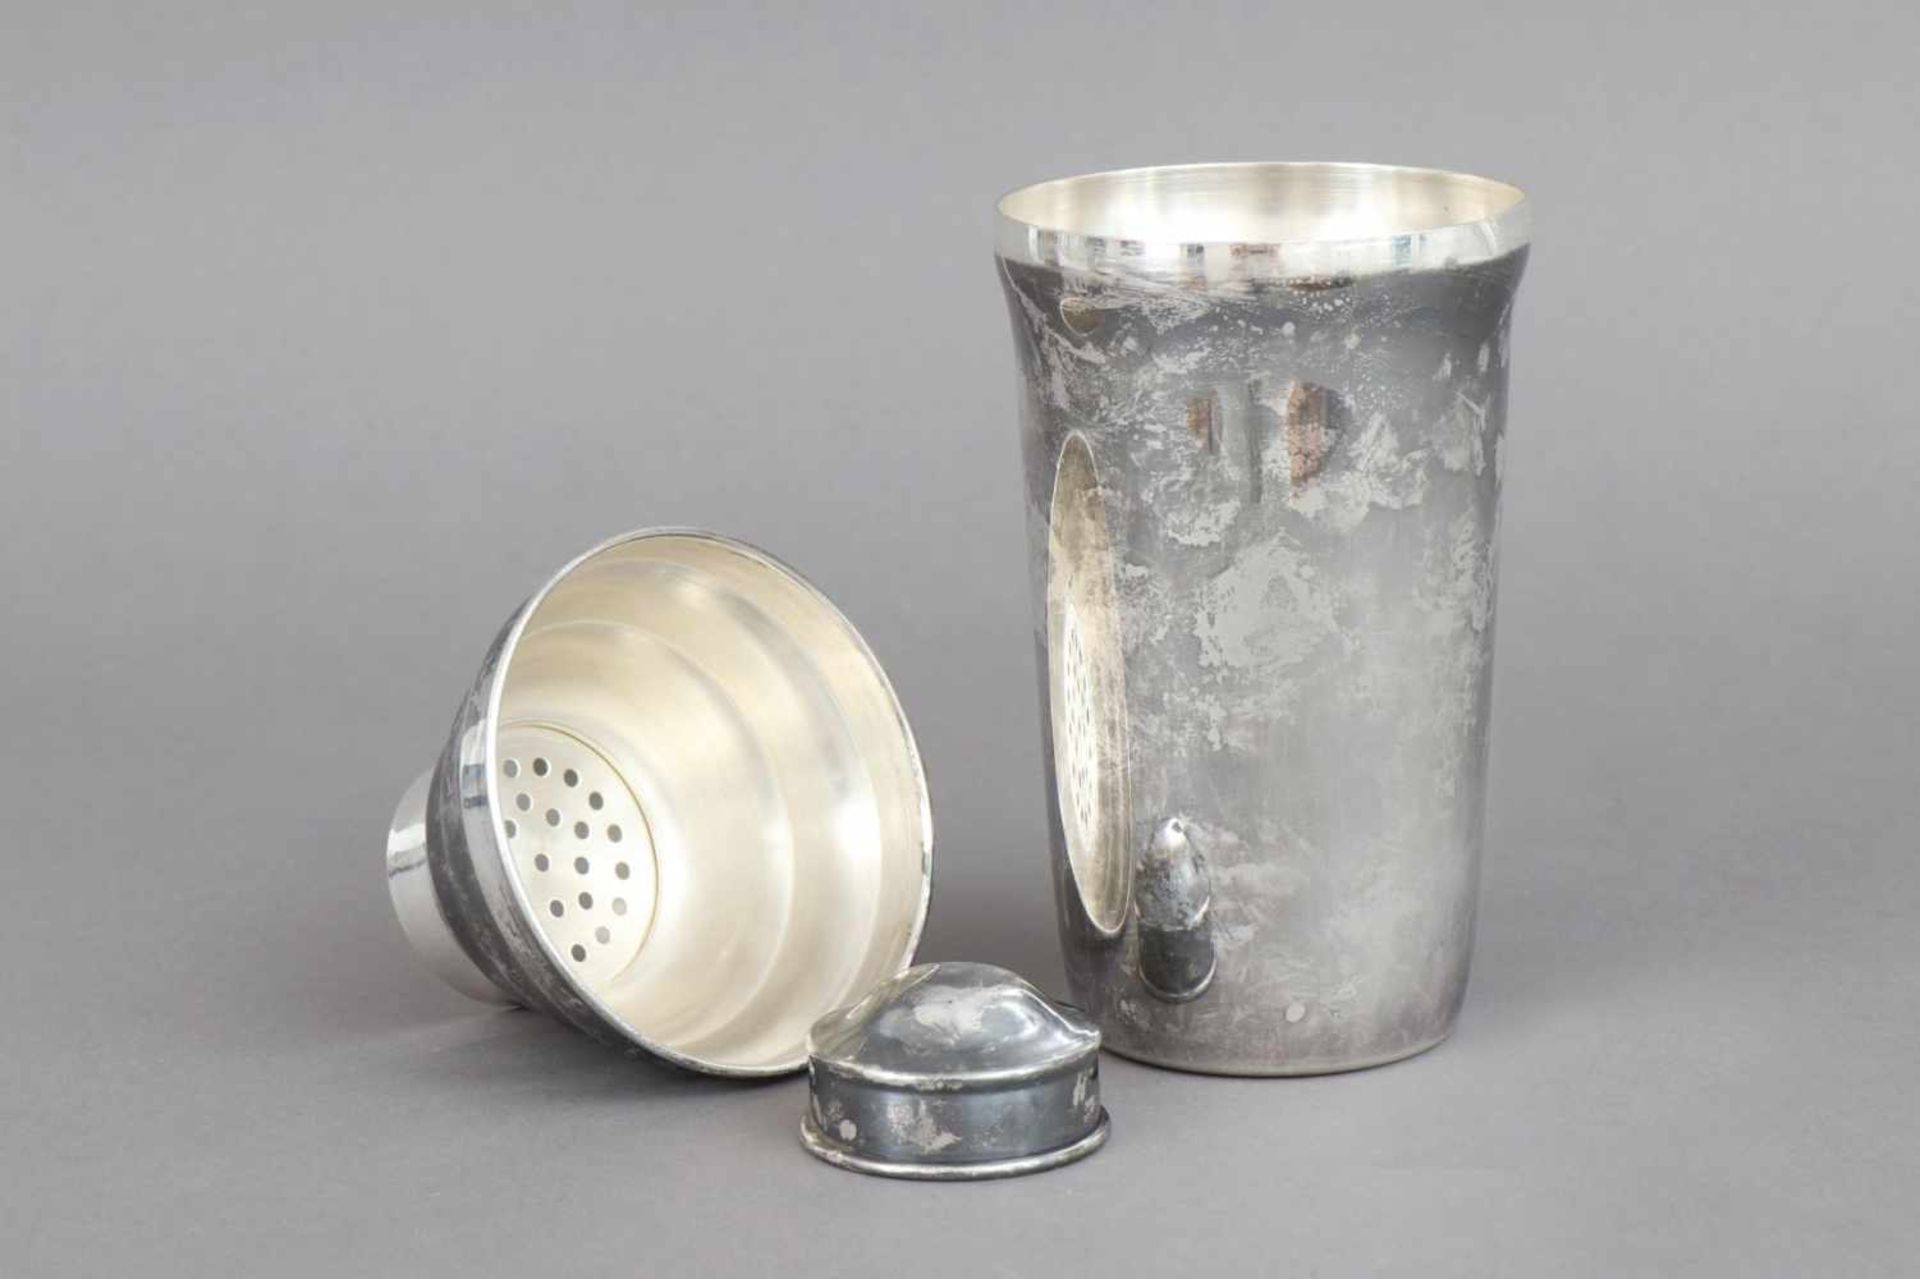 Cocktail Shaker im Stile des Art Decoversilbertes Metall, ungemarkt, H ca. 21cm - Bild 2 aus 2